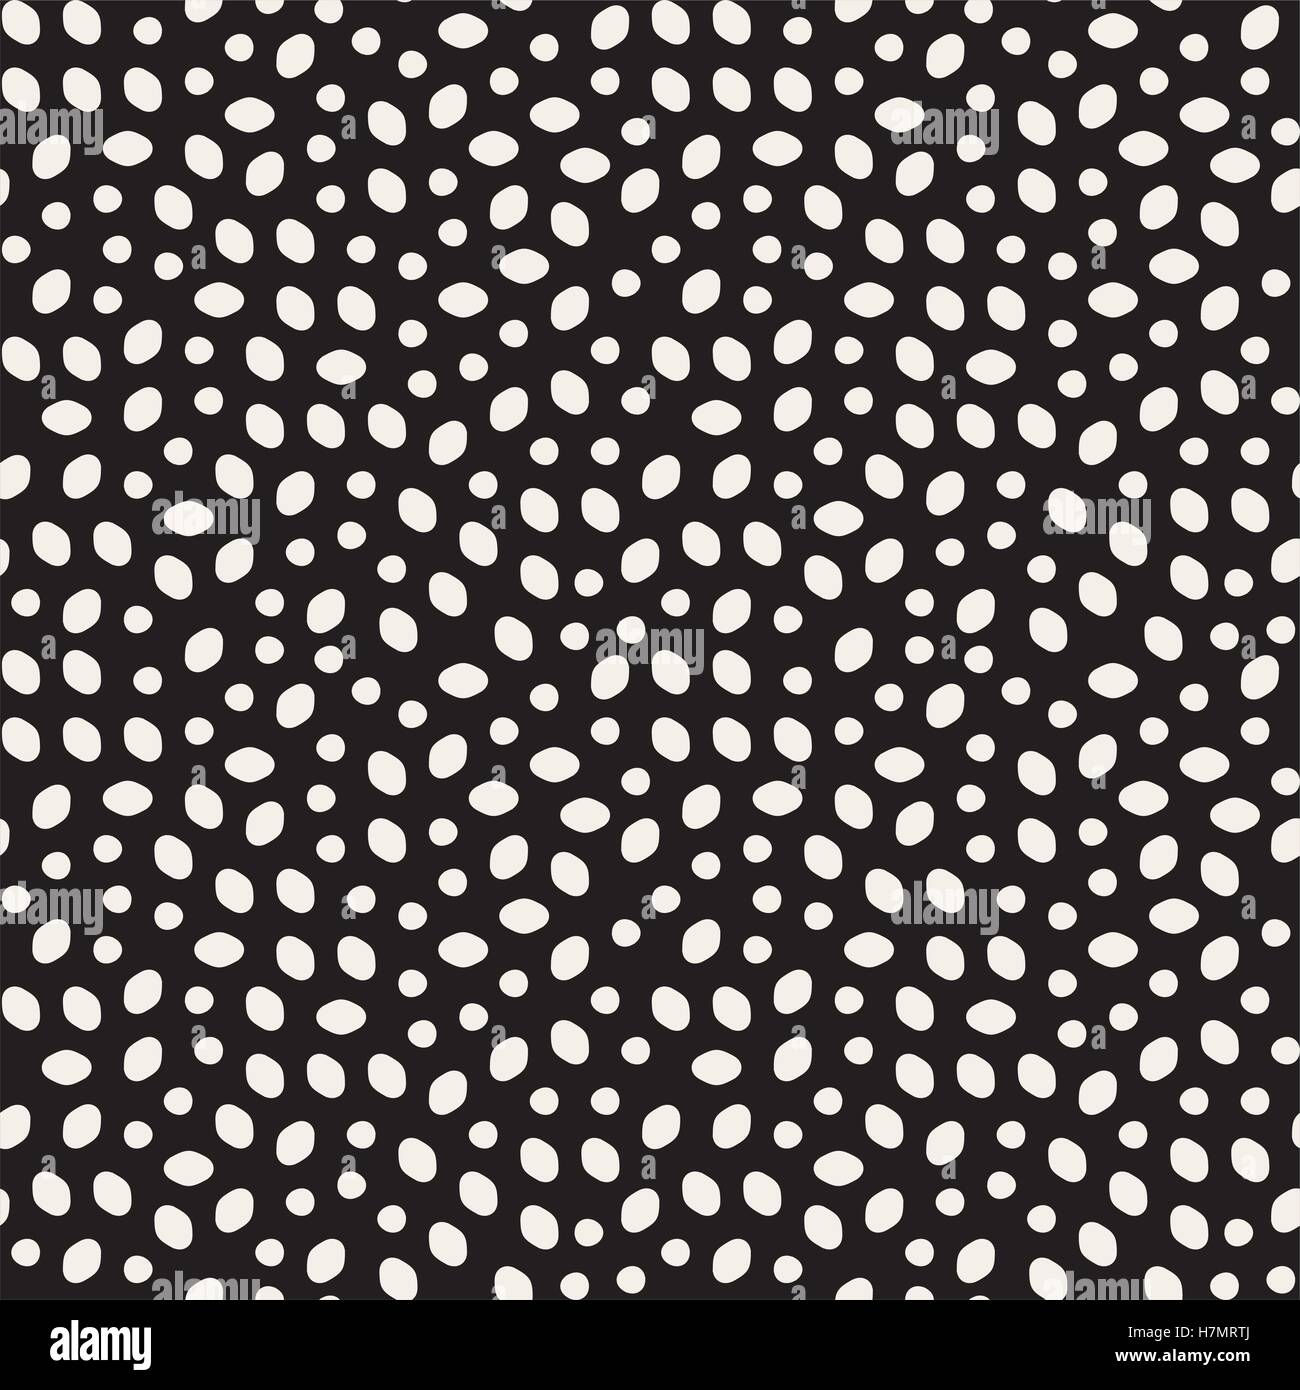 Vector Seamless in bianco e nero magma irregolare ellissi e cerchi di pattern di sfondo astratto Illustrazione Vettoriale